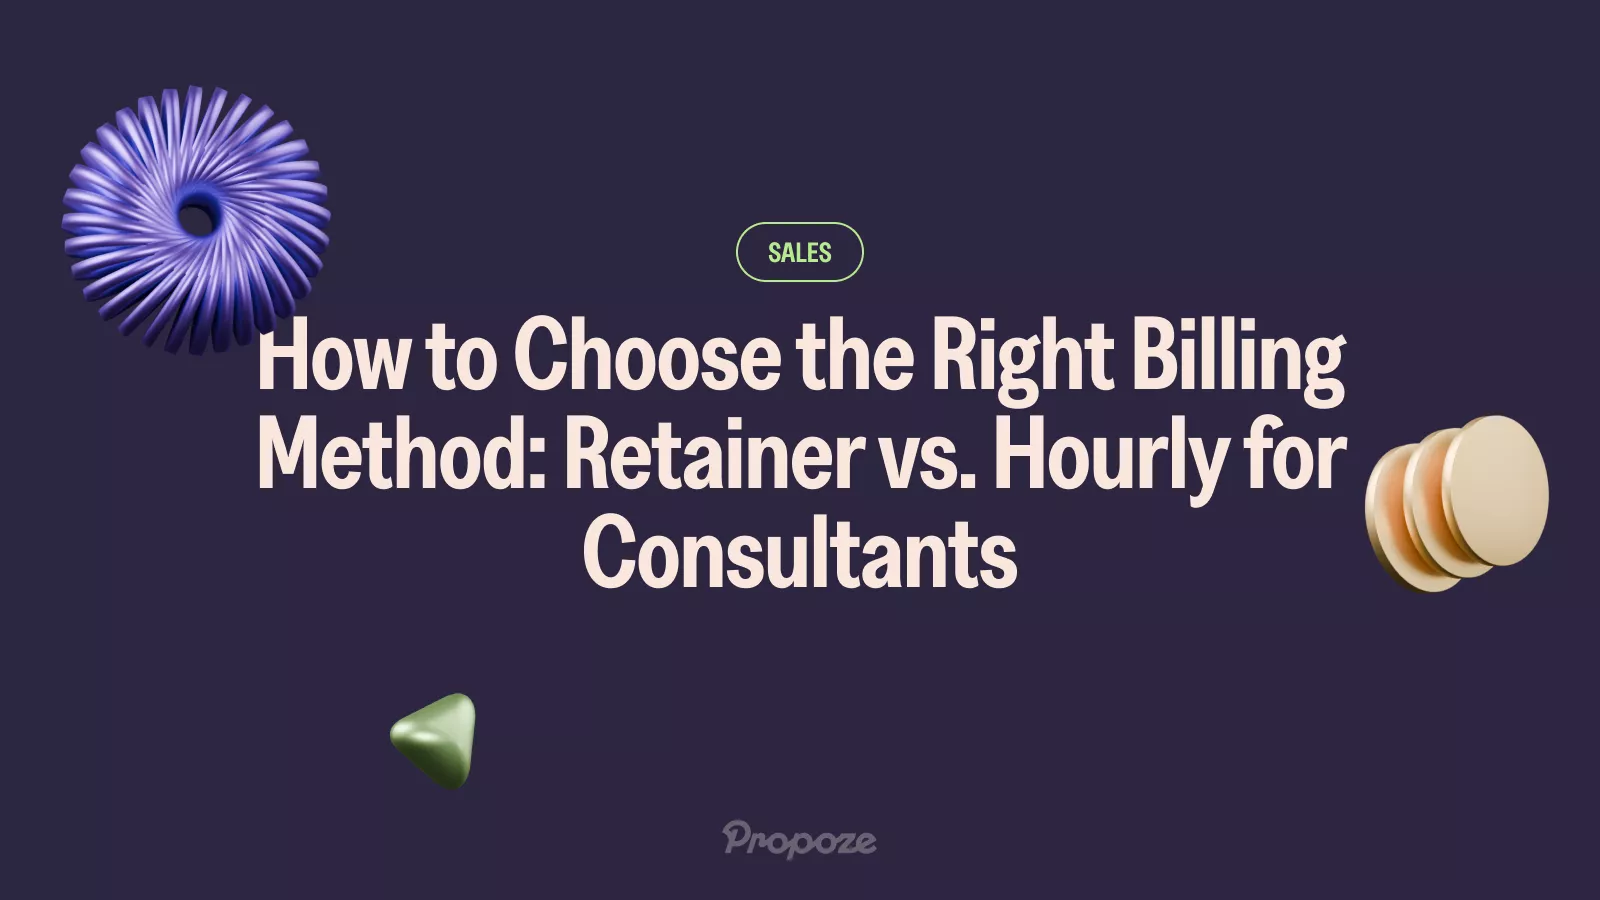 Choosing the best billing method - Retainer or Hourly